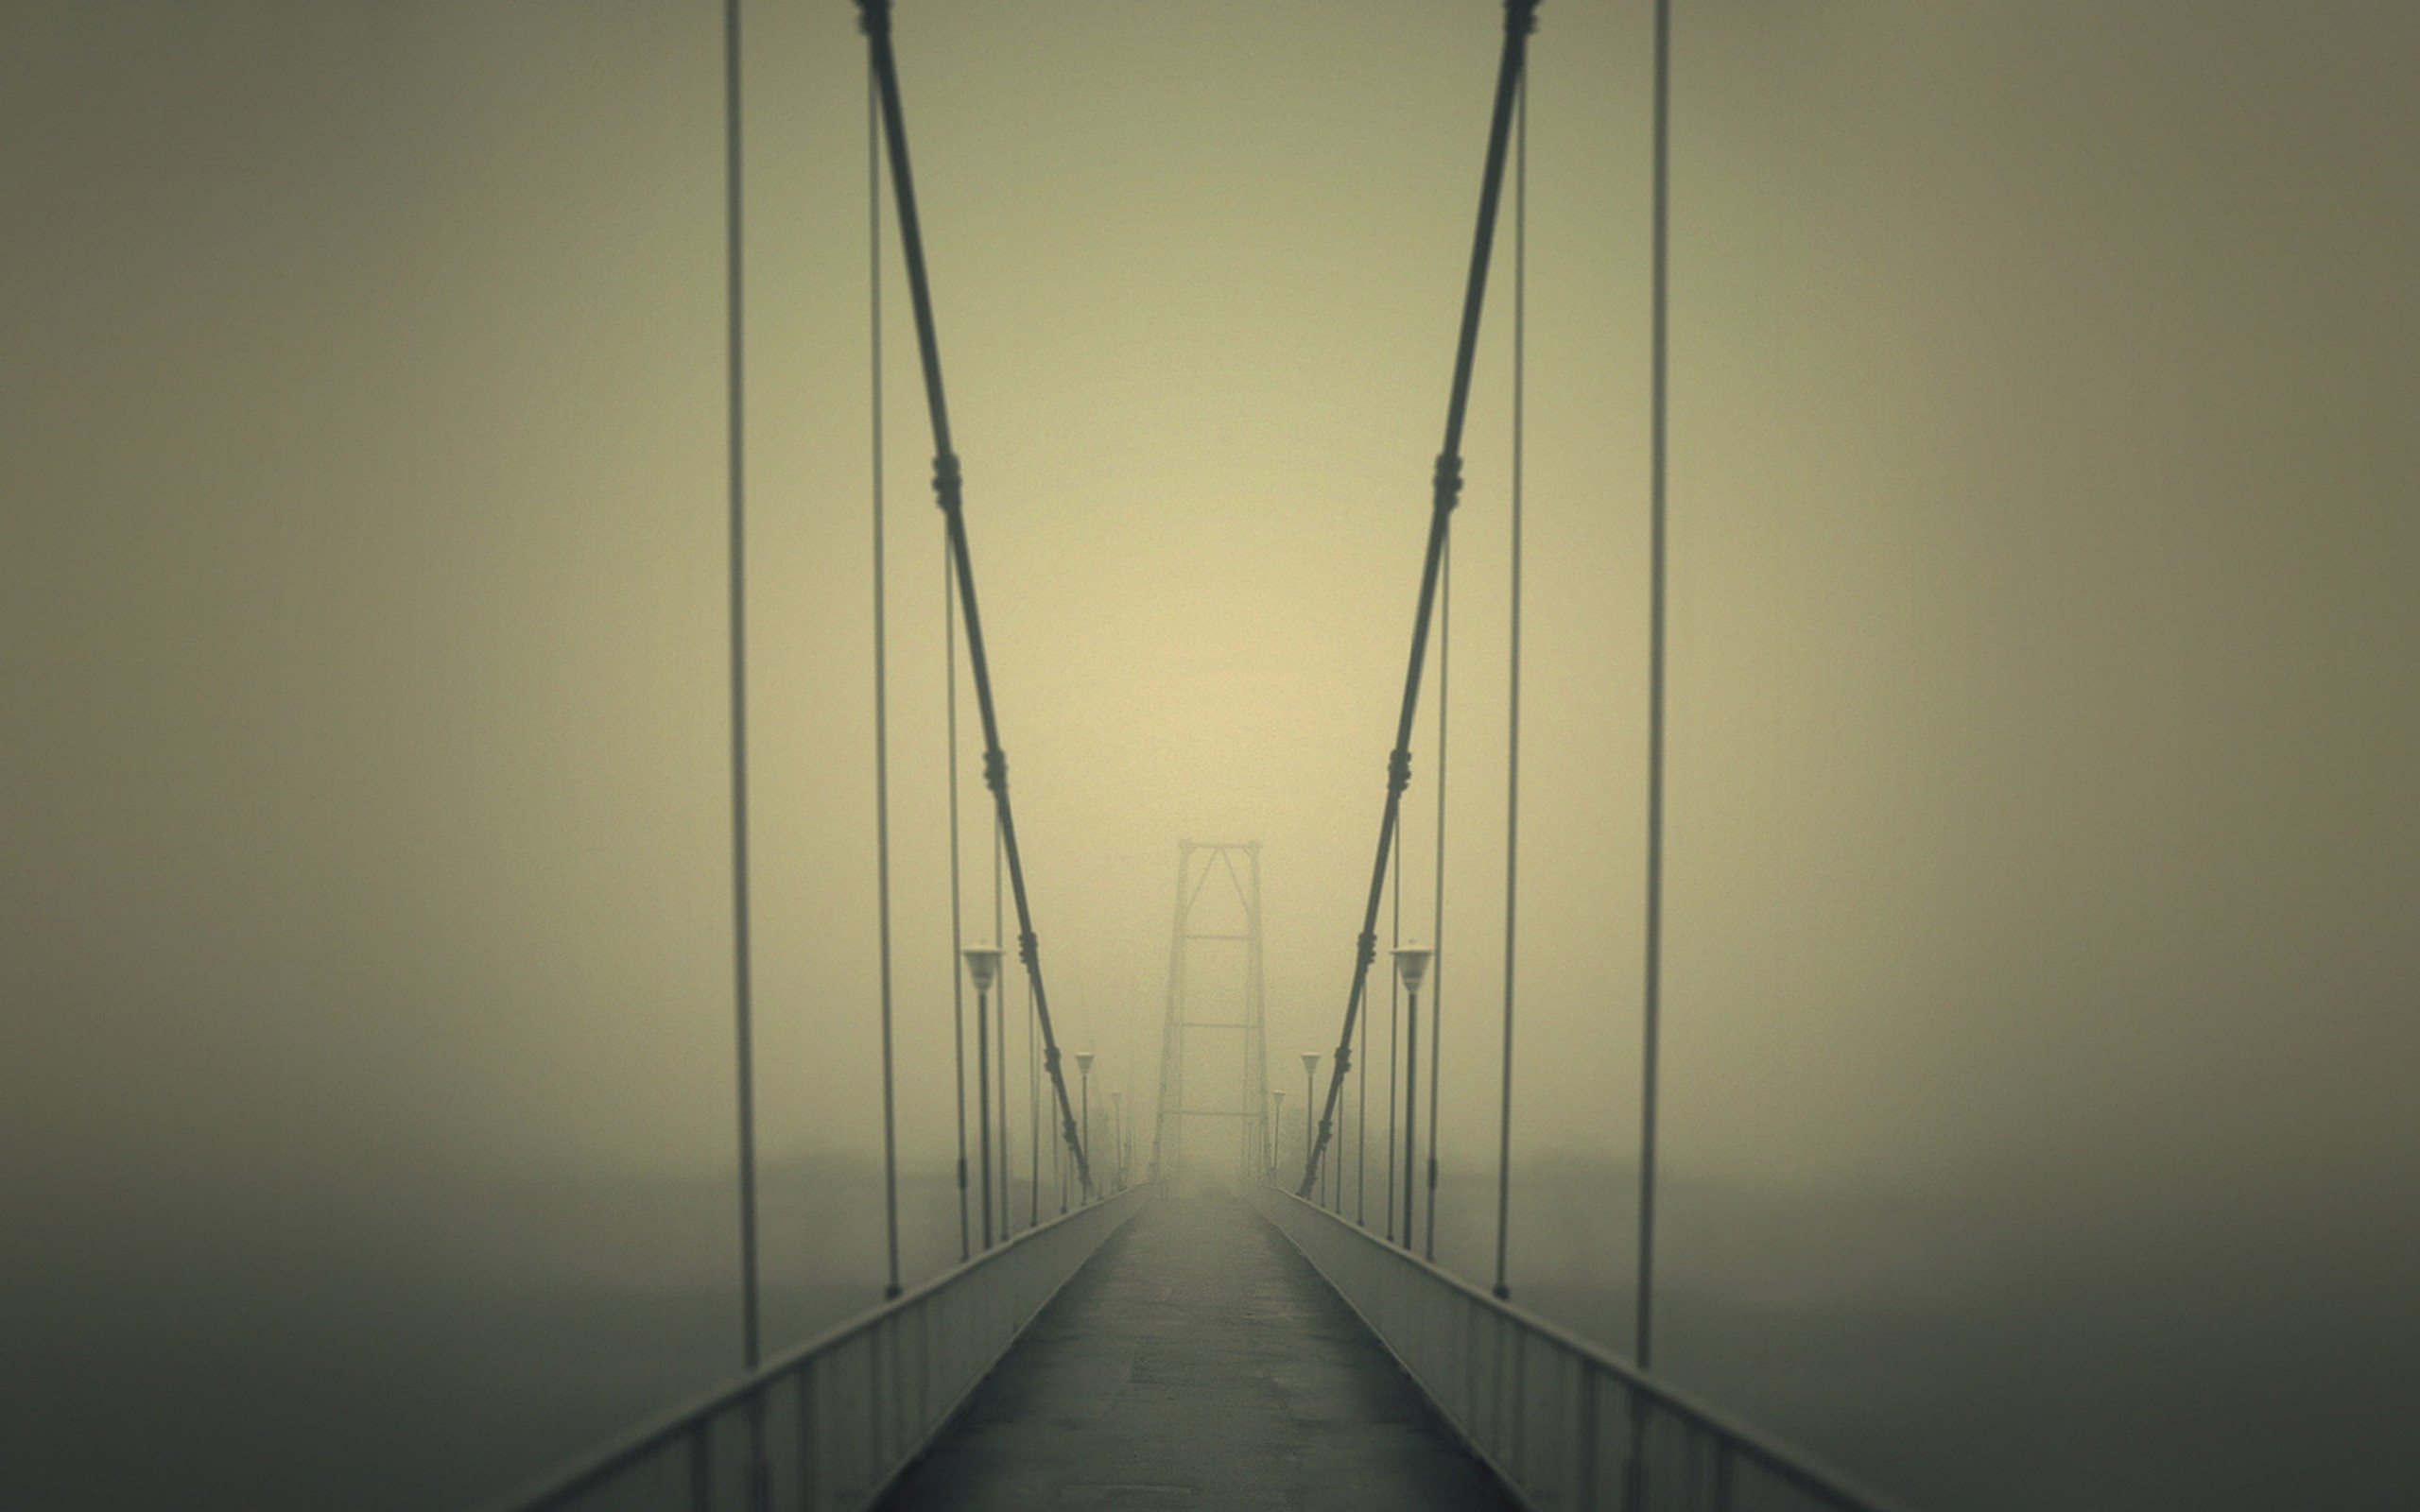 Мост в никуда. Мост в тумане. Подвесной мост в тумане. Мост уходящий в туман. Подвесной мост с перспективой.